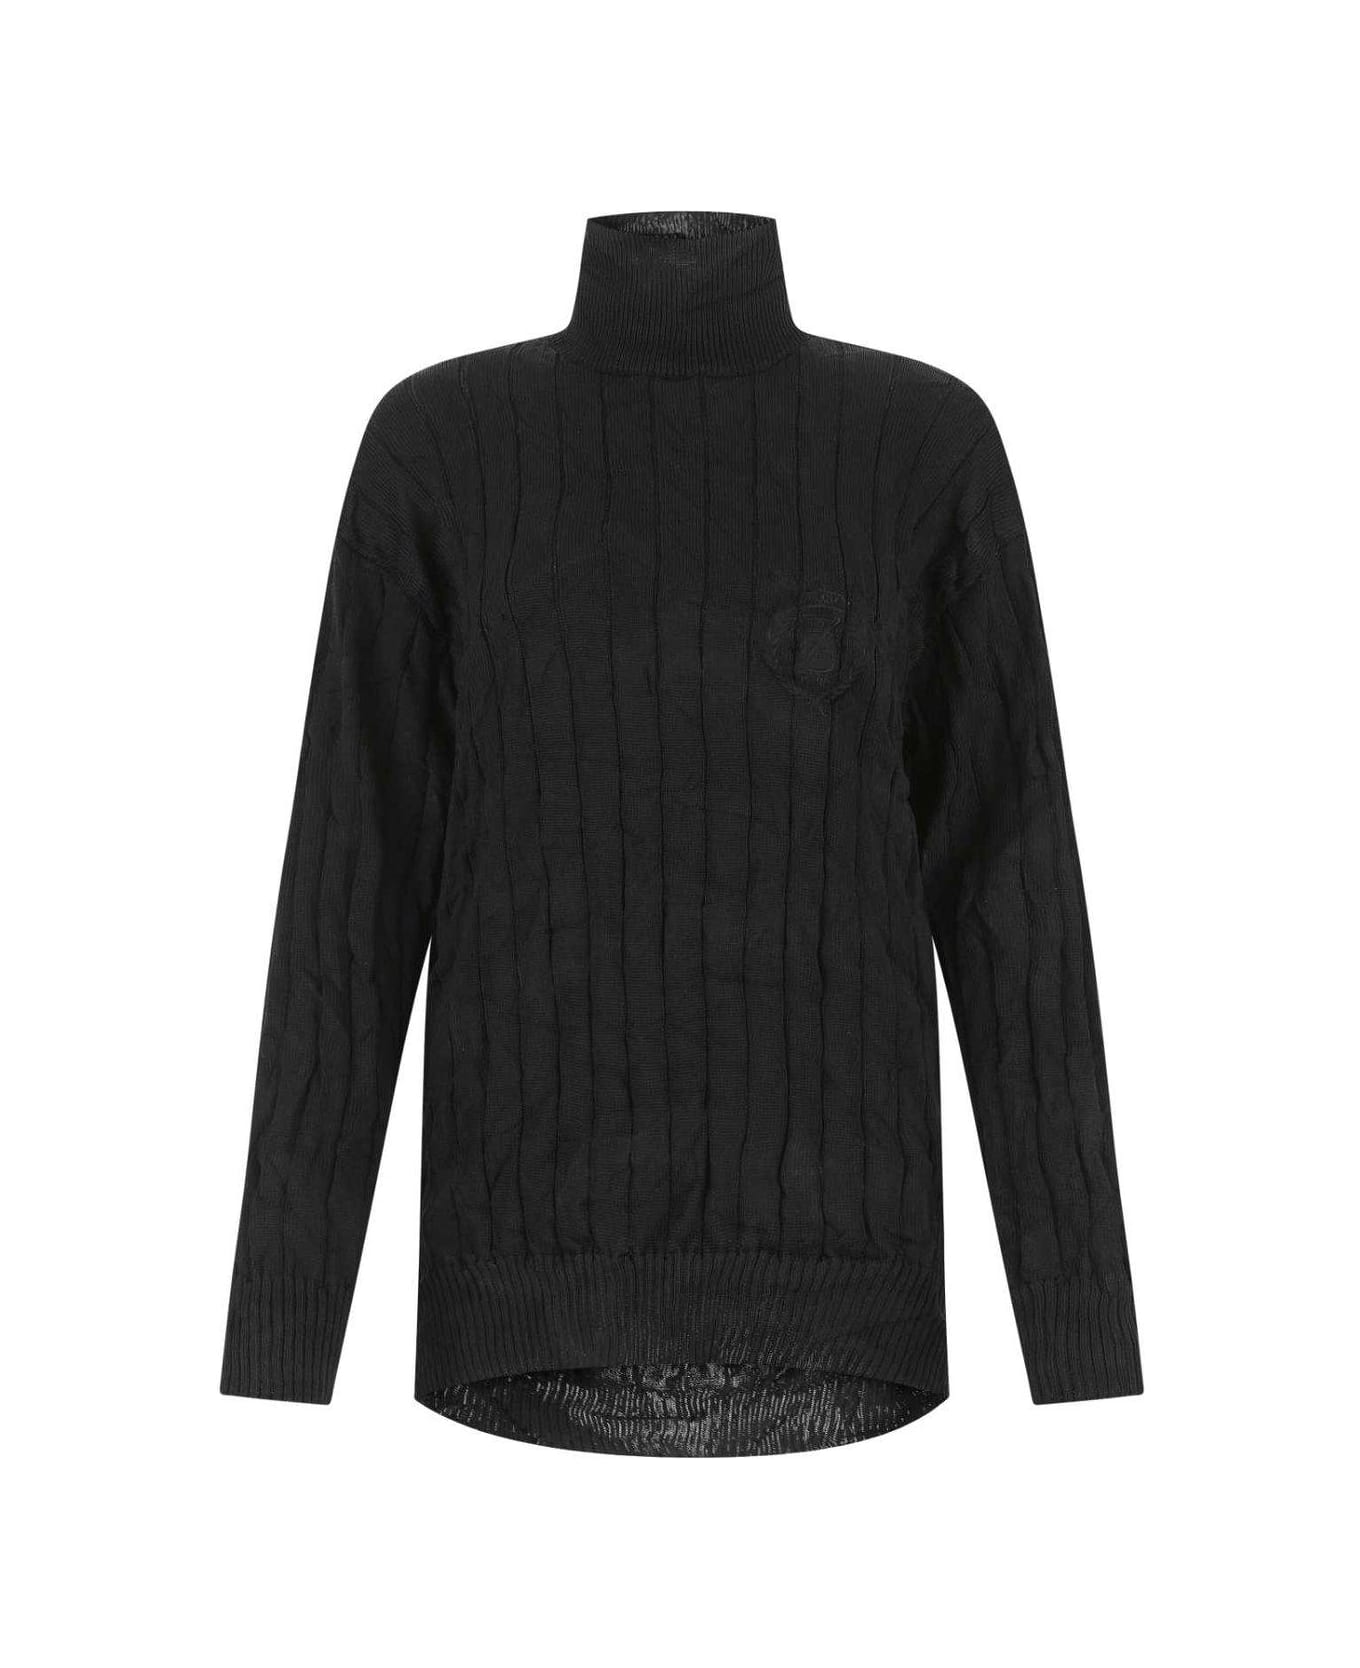 Balenciaga Creased Turtleneck Knit Jumper - BLACK ニットウェア